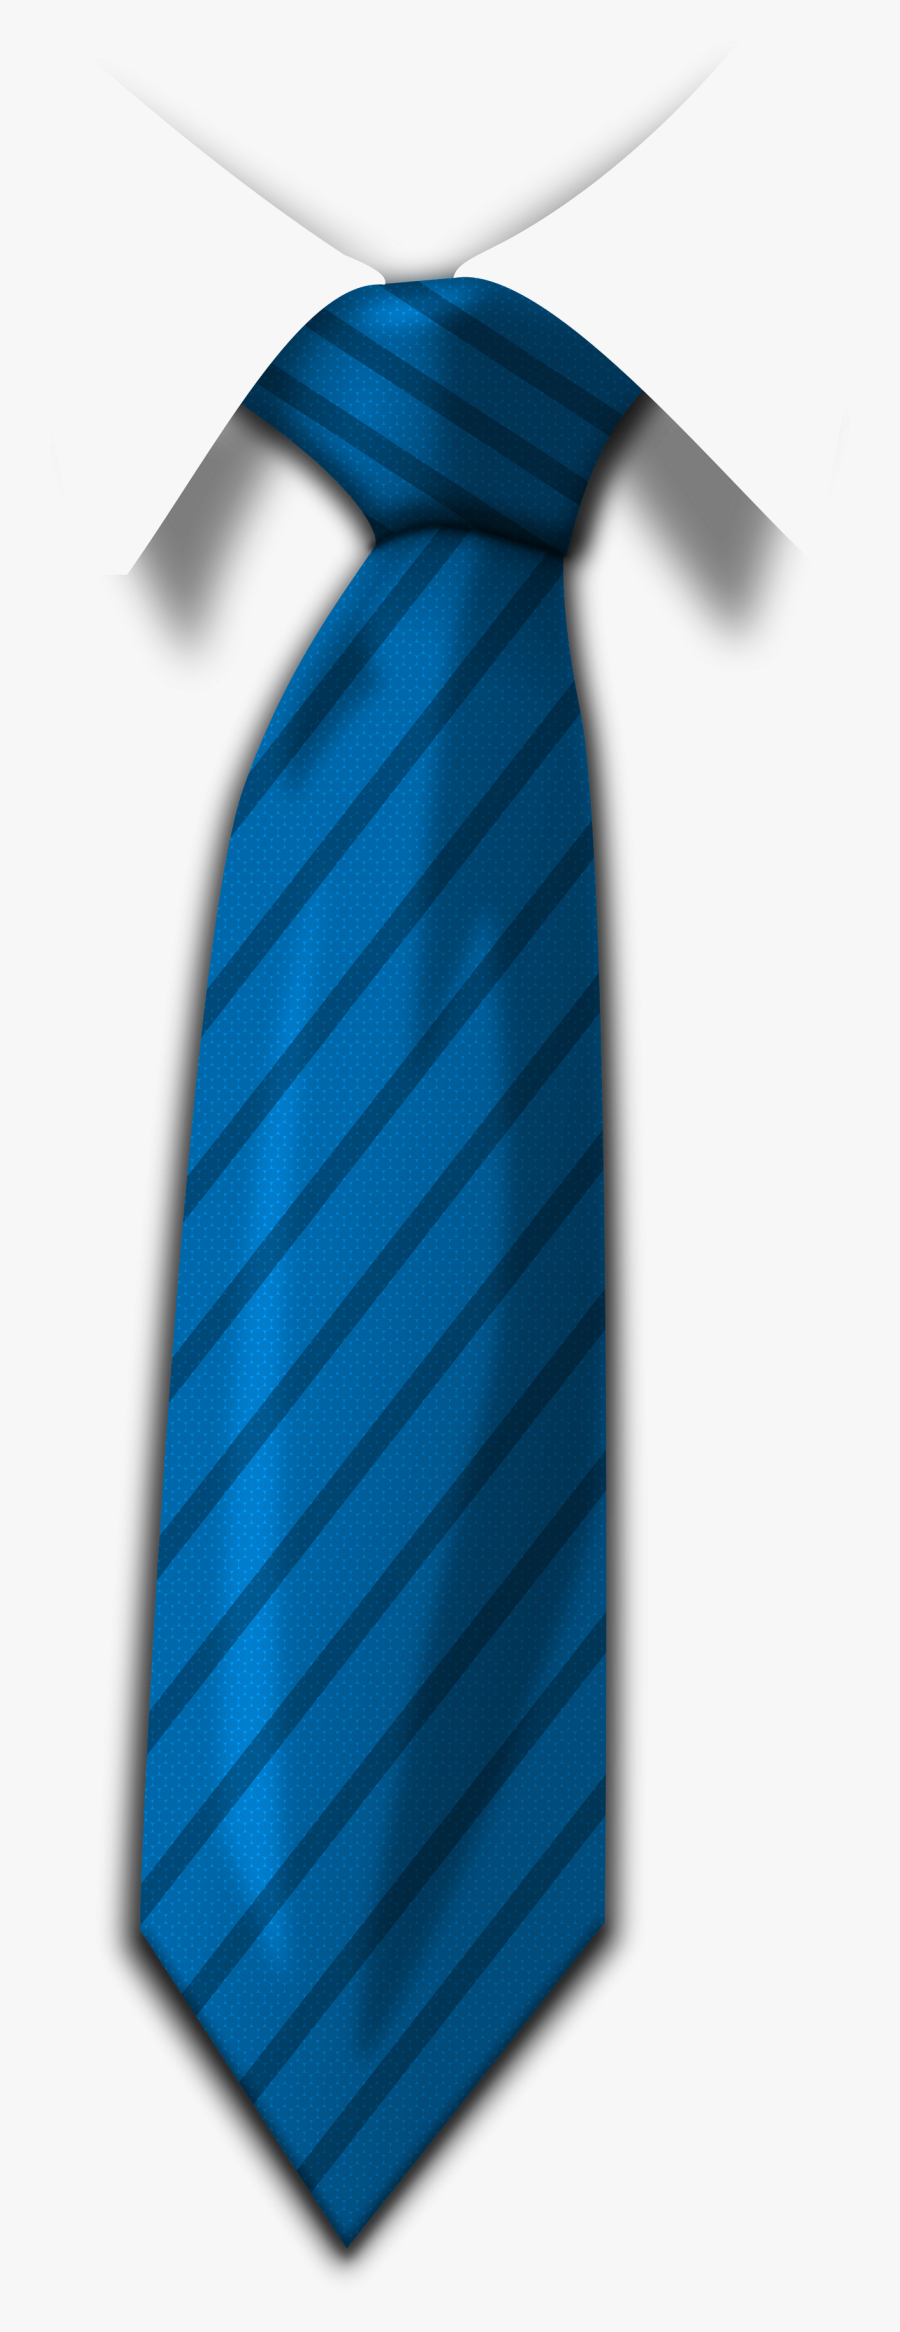 Blue Tie Png Image - Blue Tie Png, Transparent Clipart